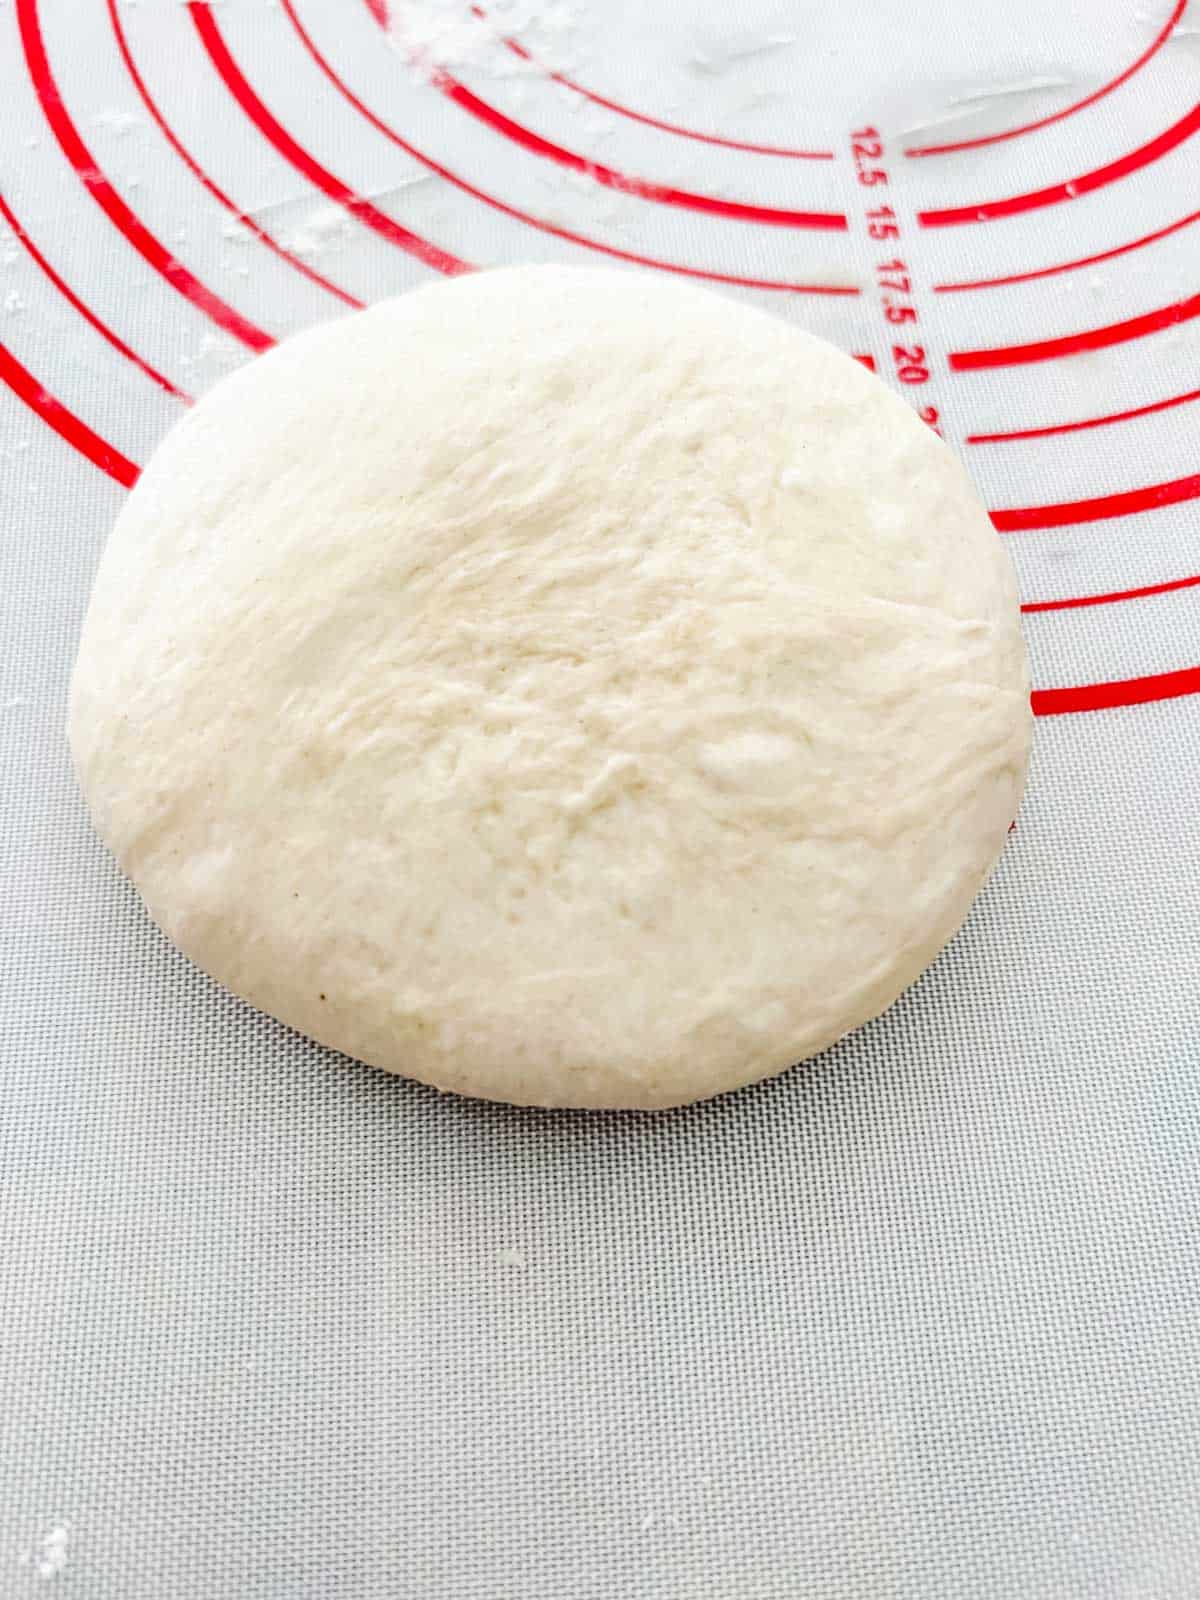 Photo of a ball of burger bun dough that has been flattened.